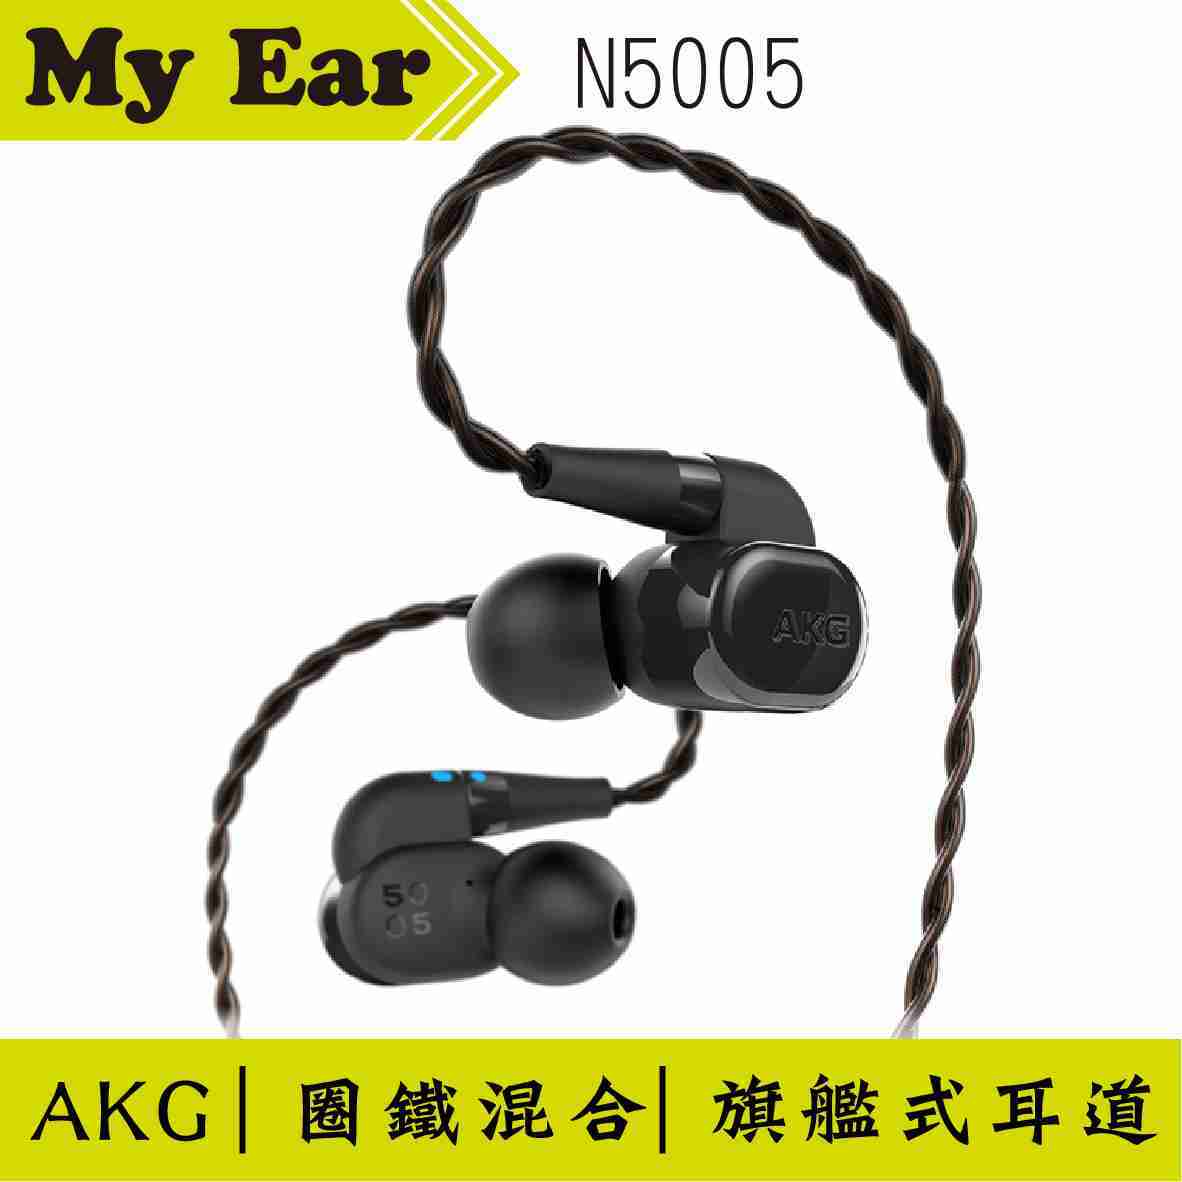 AKG N5005 圈鐵混合 旗艦耳道式 耳機 K3003 公司貨 | My Ear 耳機專門店